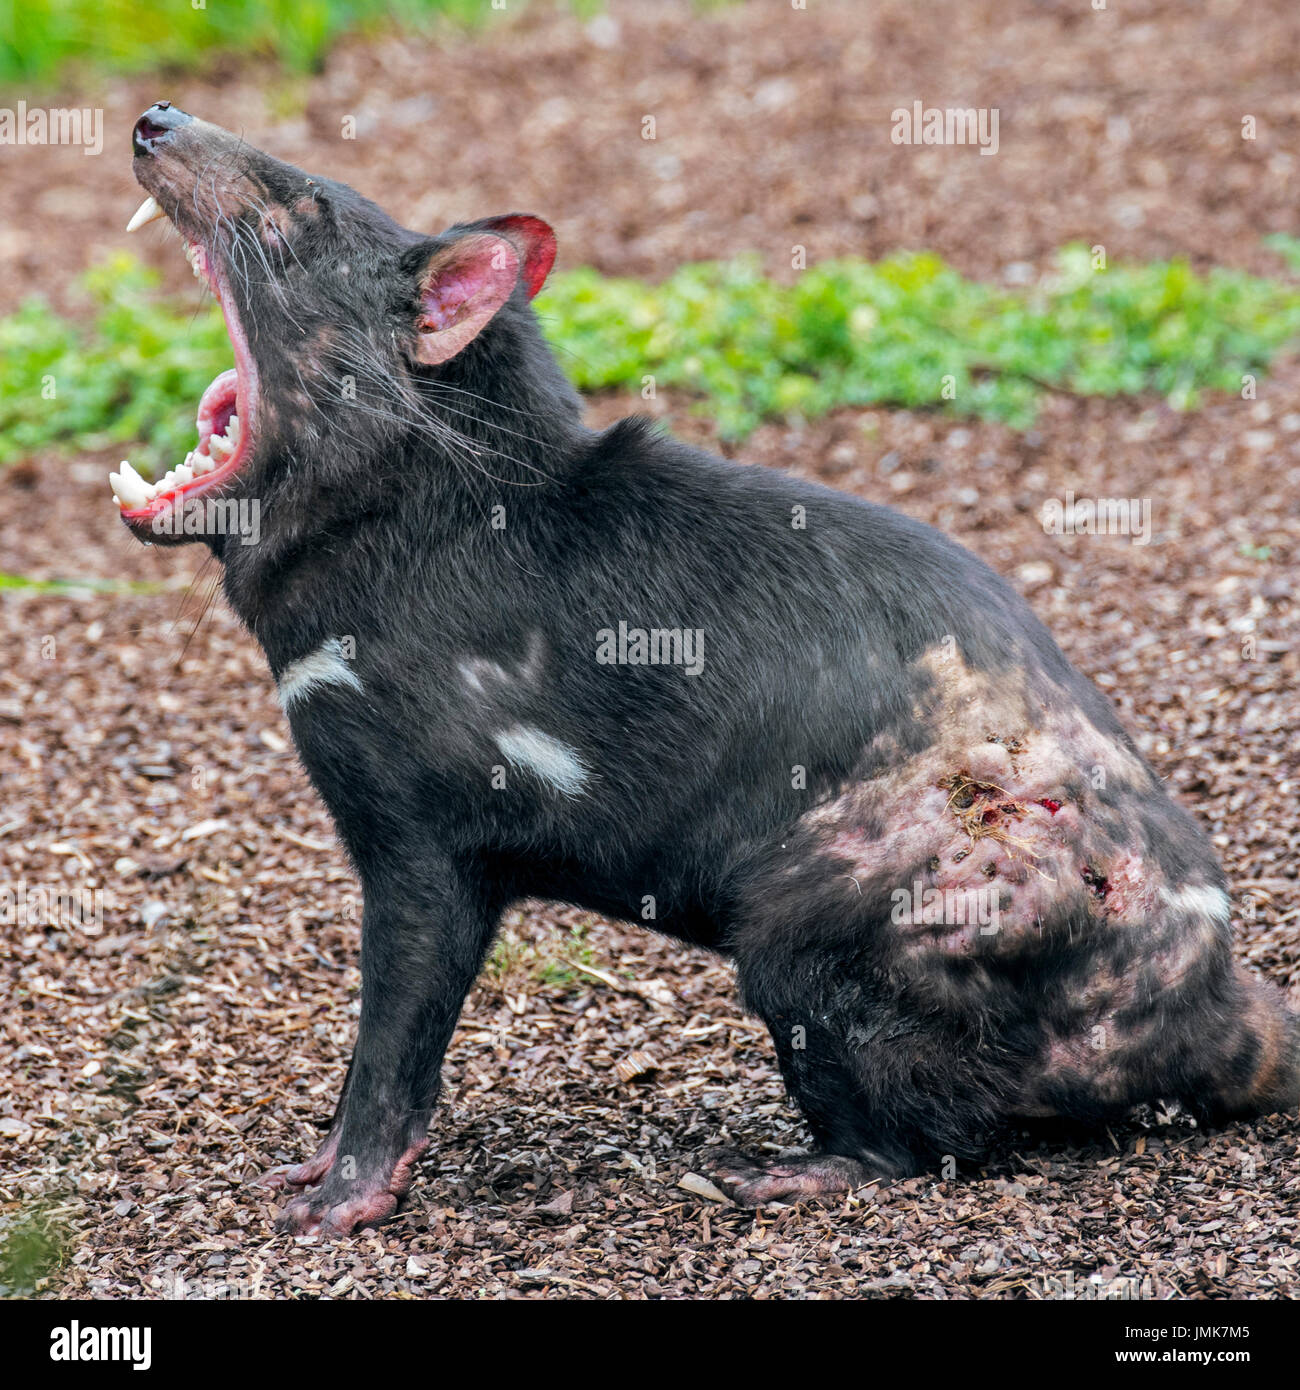 Verwundeten Tasmanischer Teufel (Sarcophilus Harrisii), Beuteltier Eingeborener nach Australien, bedeckt mit Bitemarks und zeigt große Zähne im Mund weit offen Stockfoto